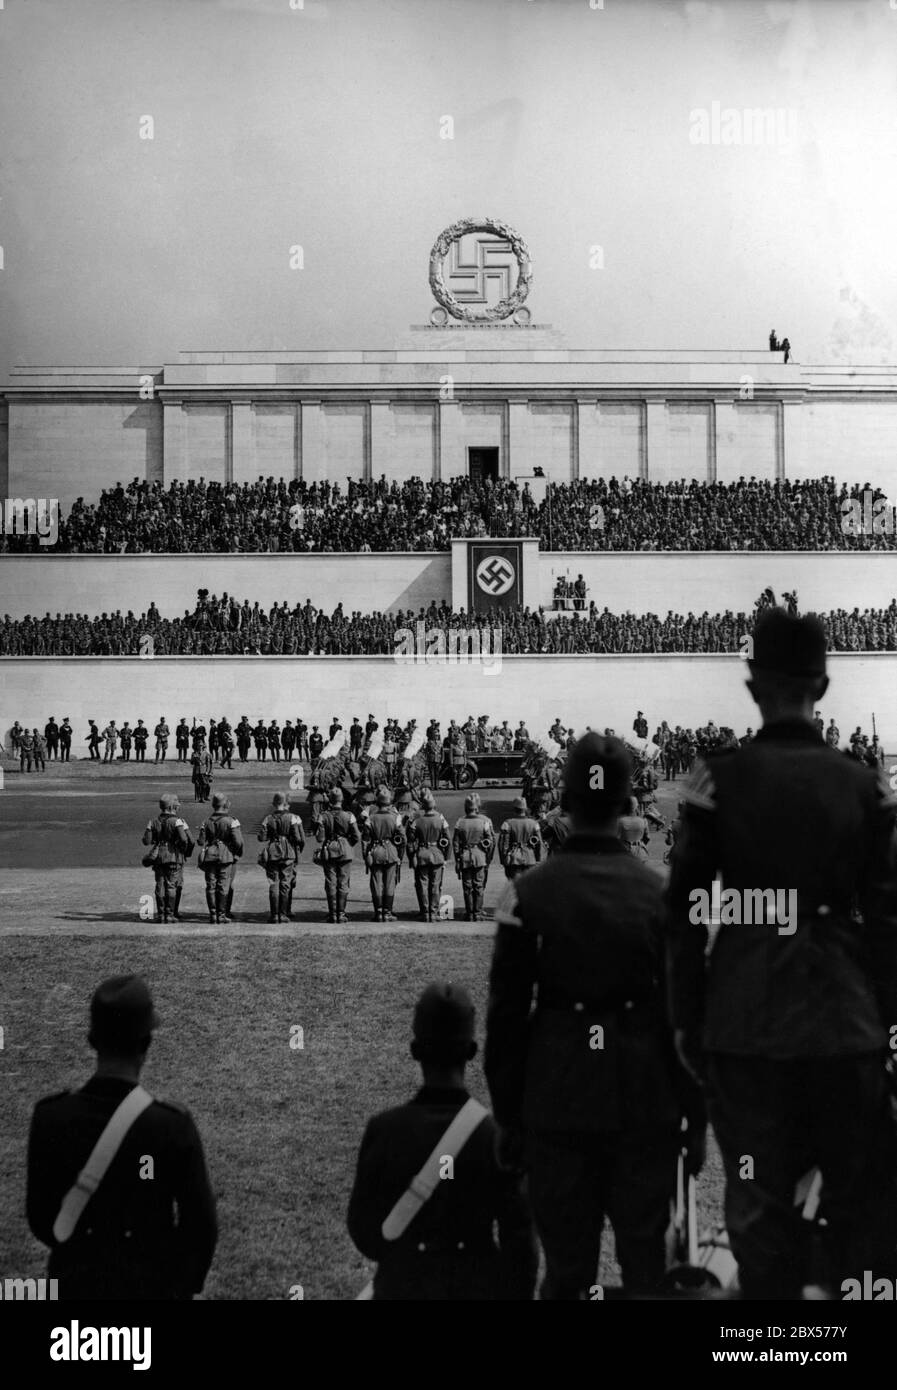 Adolf Hitler, debout dans sa Mercedes, prend le salut des formations du Reich Labour Service sur le champ de Zeppelin pendant le rallye de Nuremberg. En arrière-plan, le stand de Zeppelin. Sur le bord gauche de l'image et sur le stand de grand-stand se trouvent les caméras de film. Banque D'Images